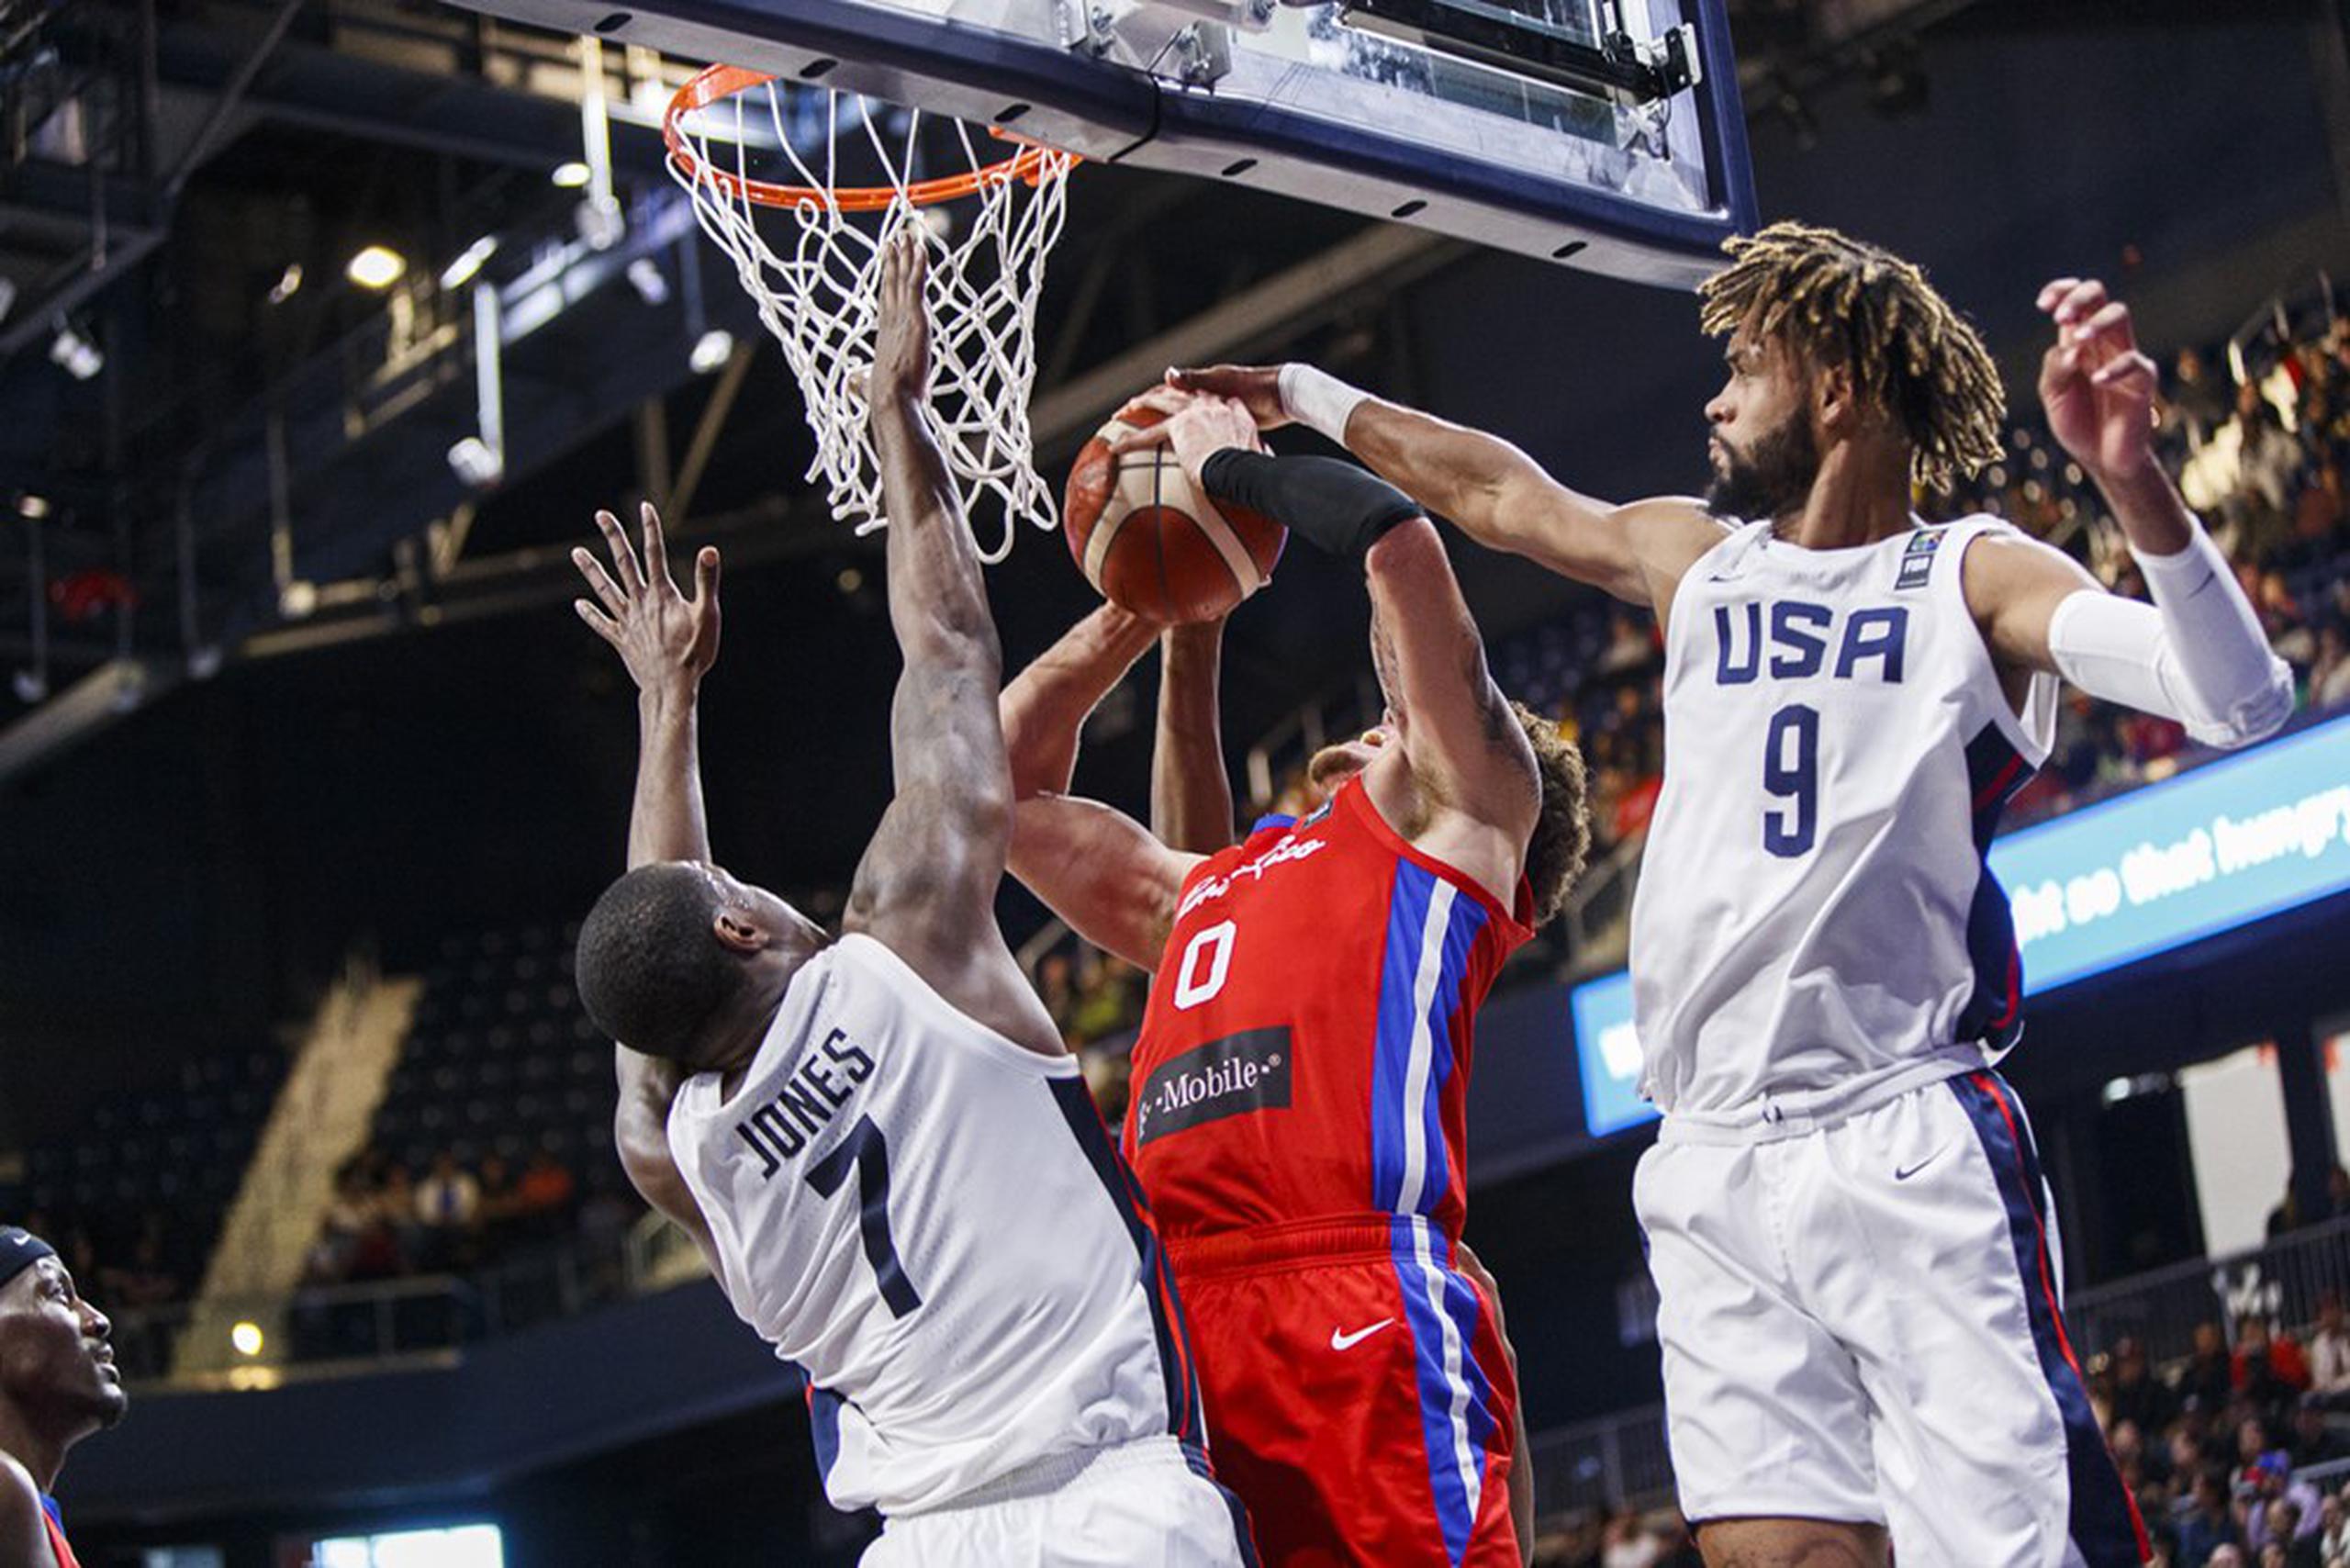 Isaiah Piñeiro recibe un tapón al retar una agresiva defensa de los Estados Unidos. (FIBA)